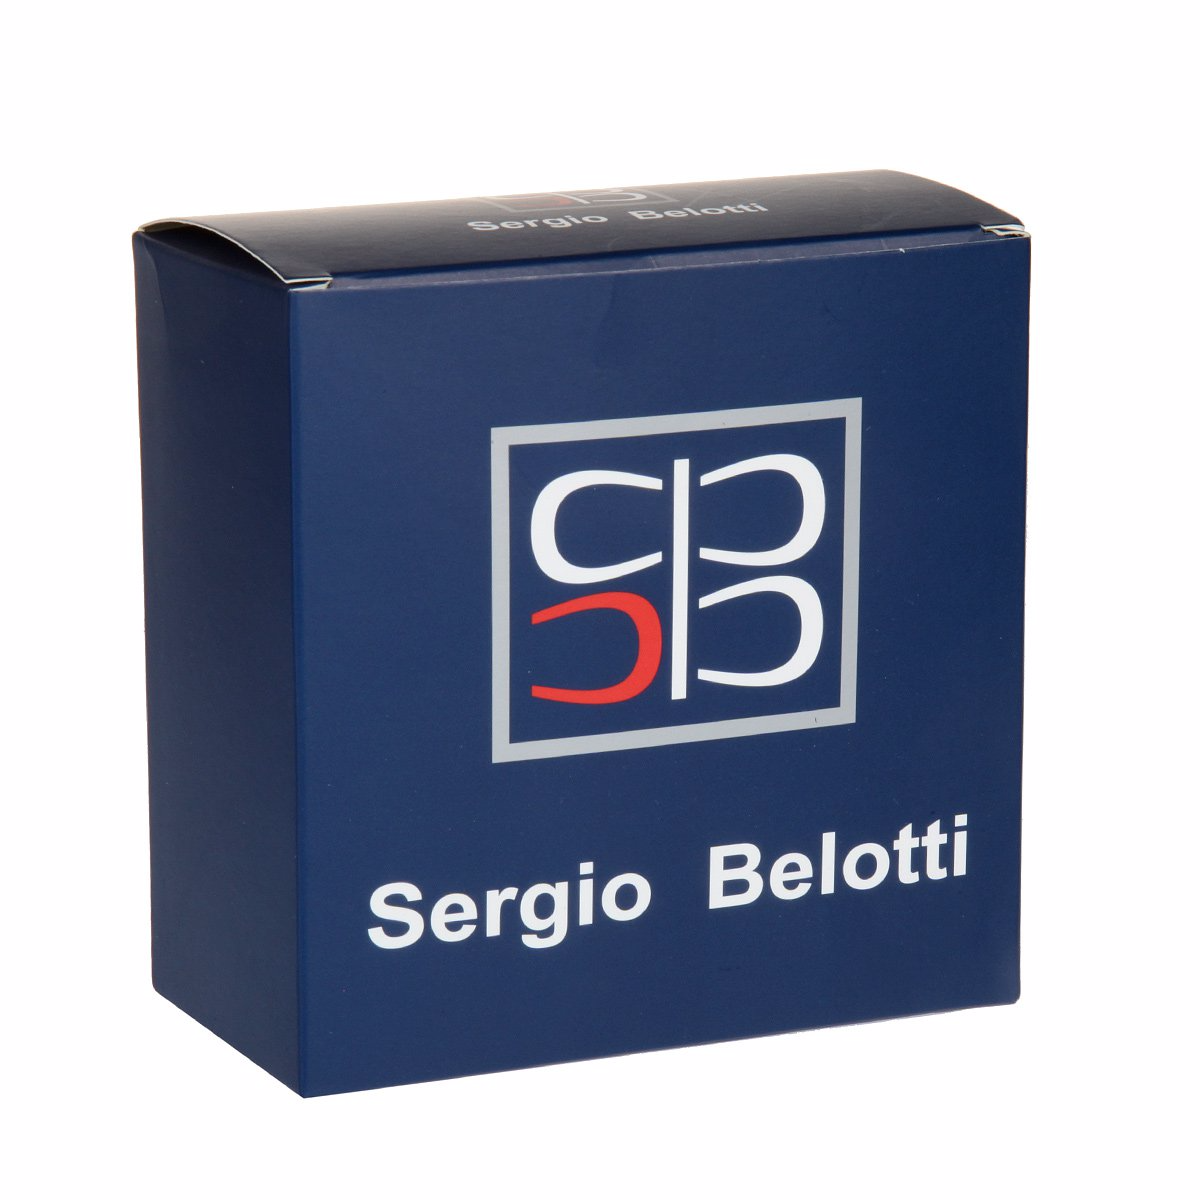 Ремень
Sergio Belotti
6098/35 Blu Ремни и пояса